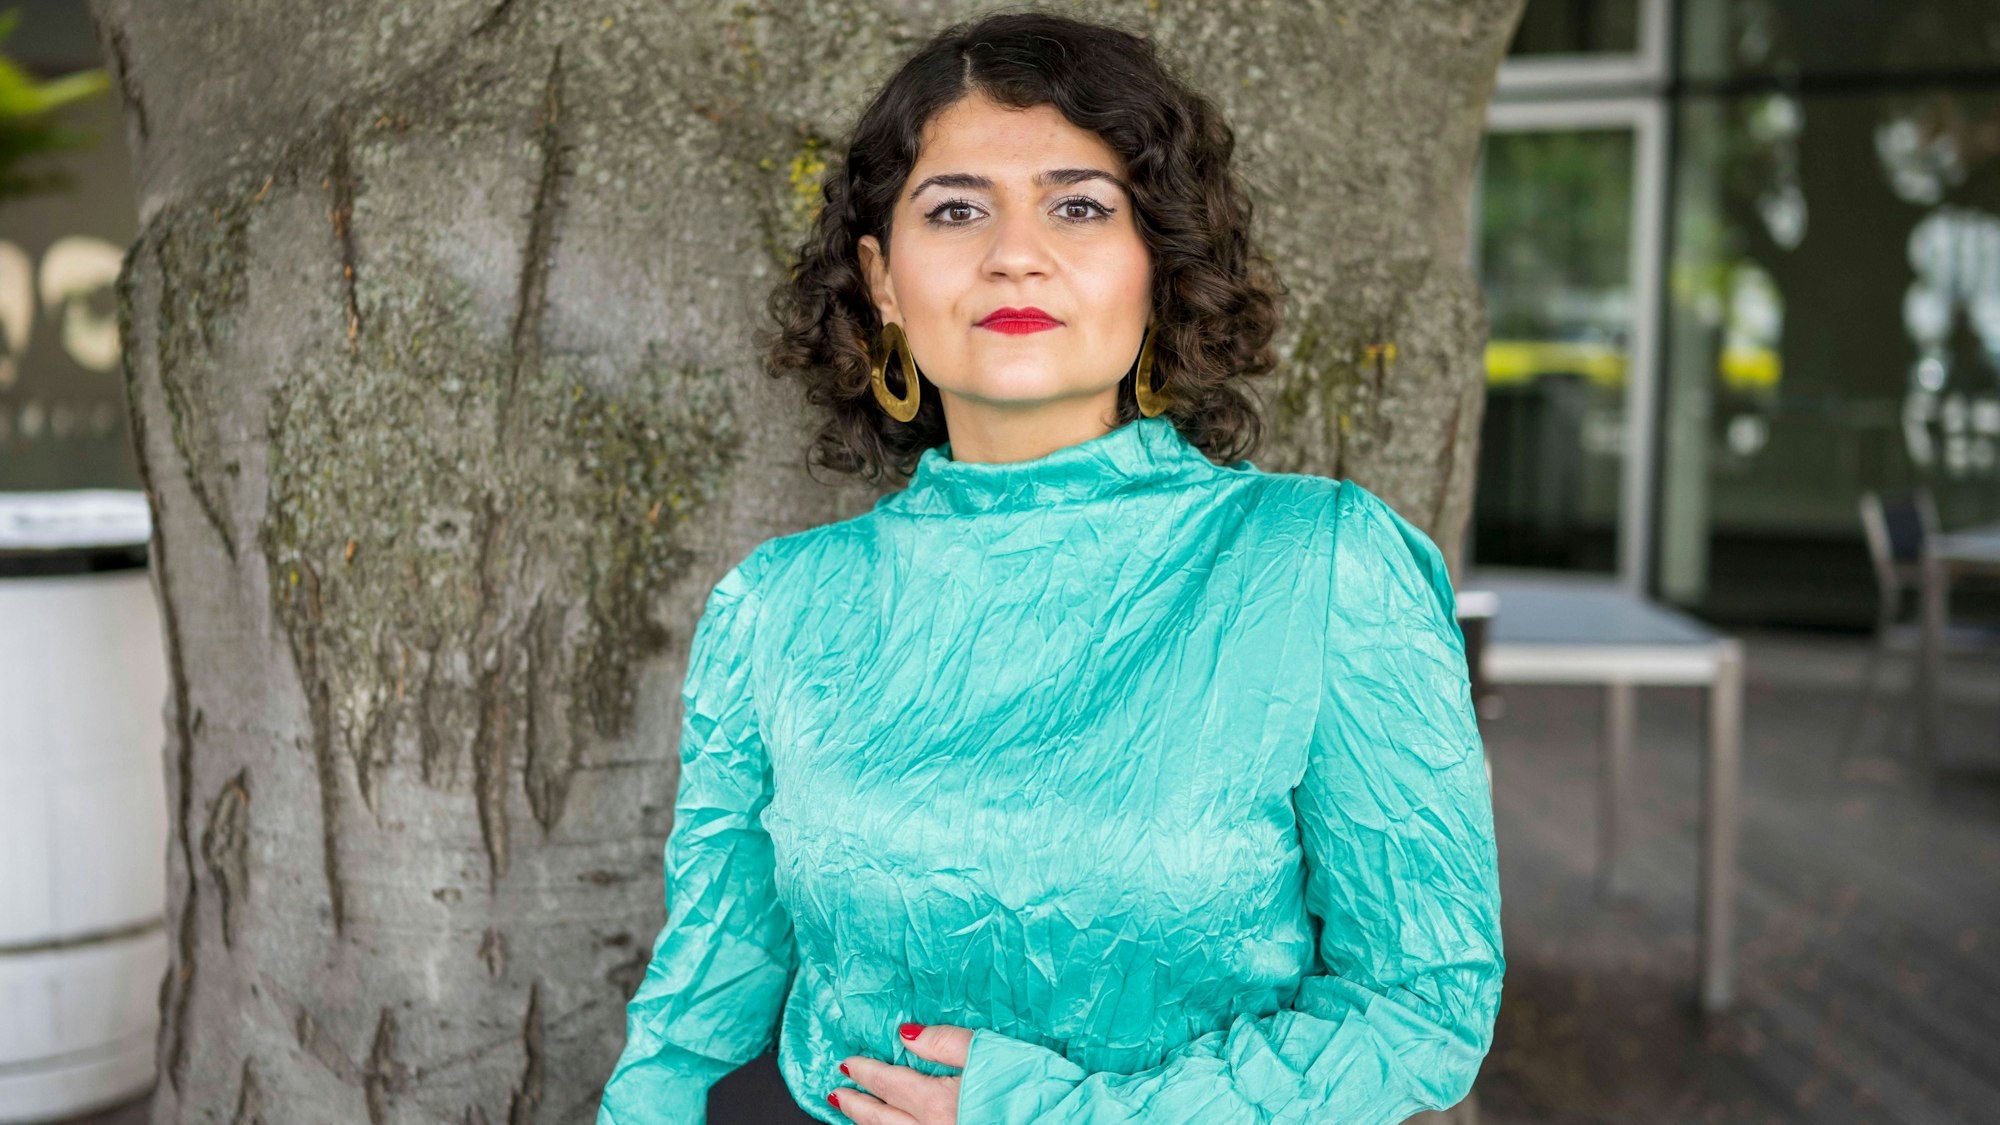 Die Regisseurin Pınar Karabulut posiert vor einem Baumstamm. Sie trägt eine türkis-schimmernde Bluse.